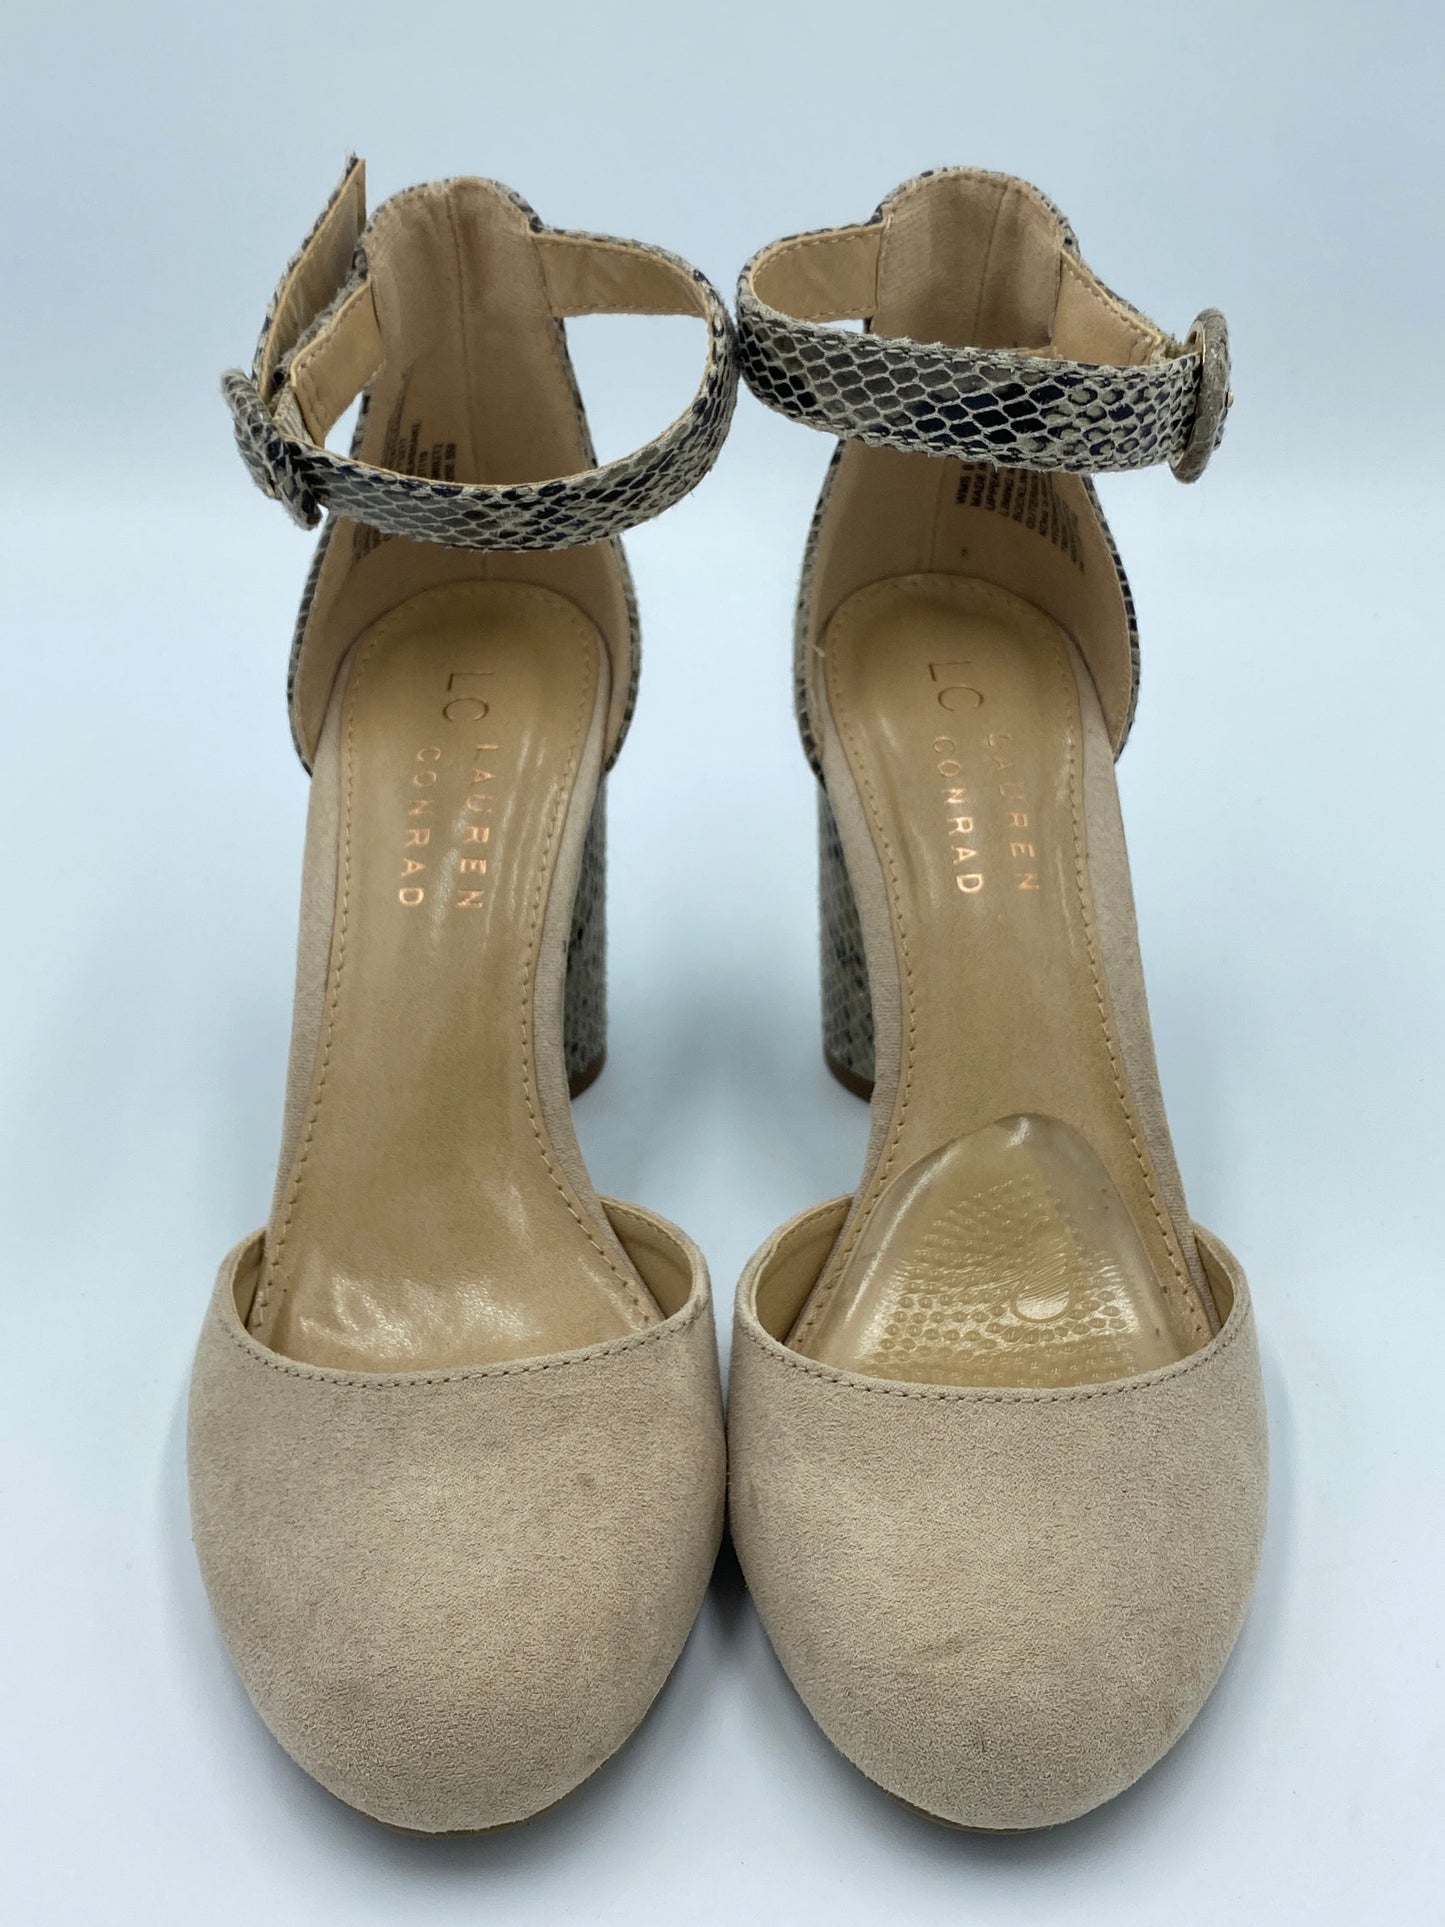 Shoes Heels Block By Lc Lauren Conrad  Size: 6